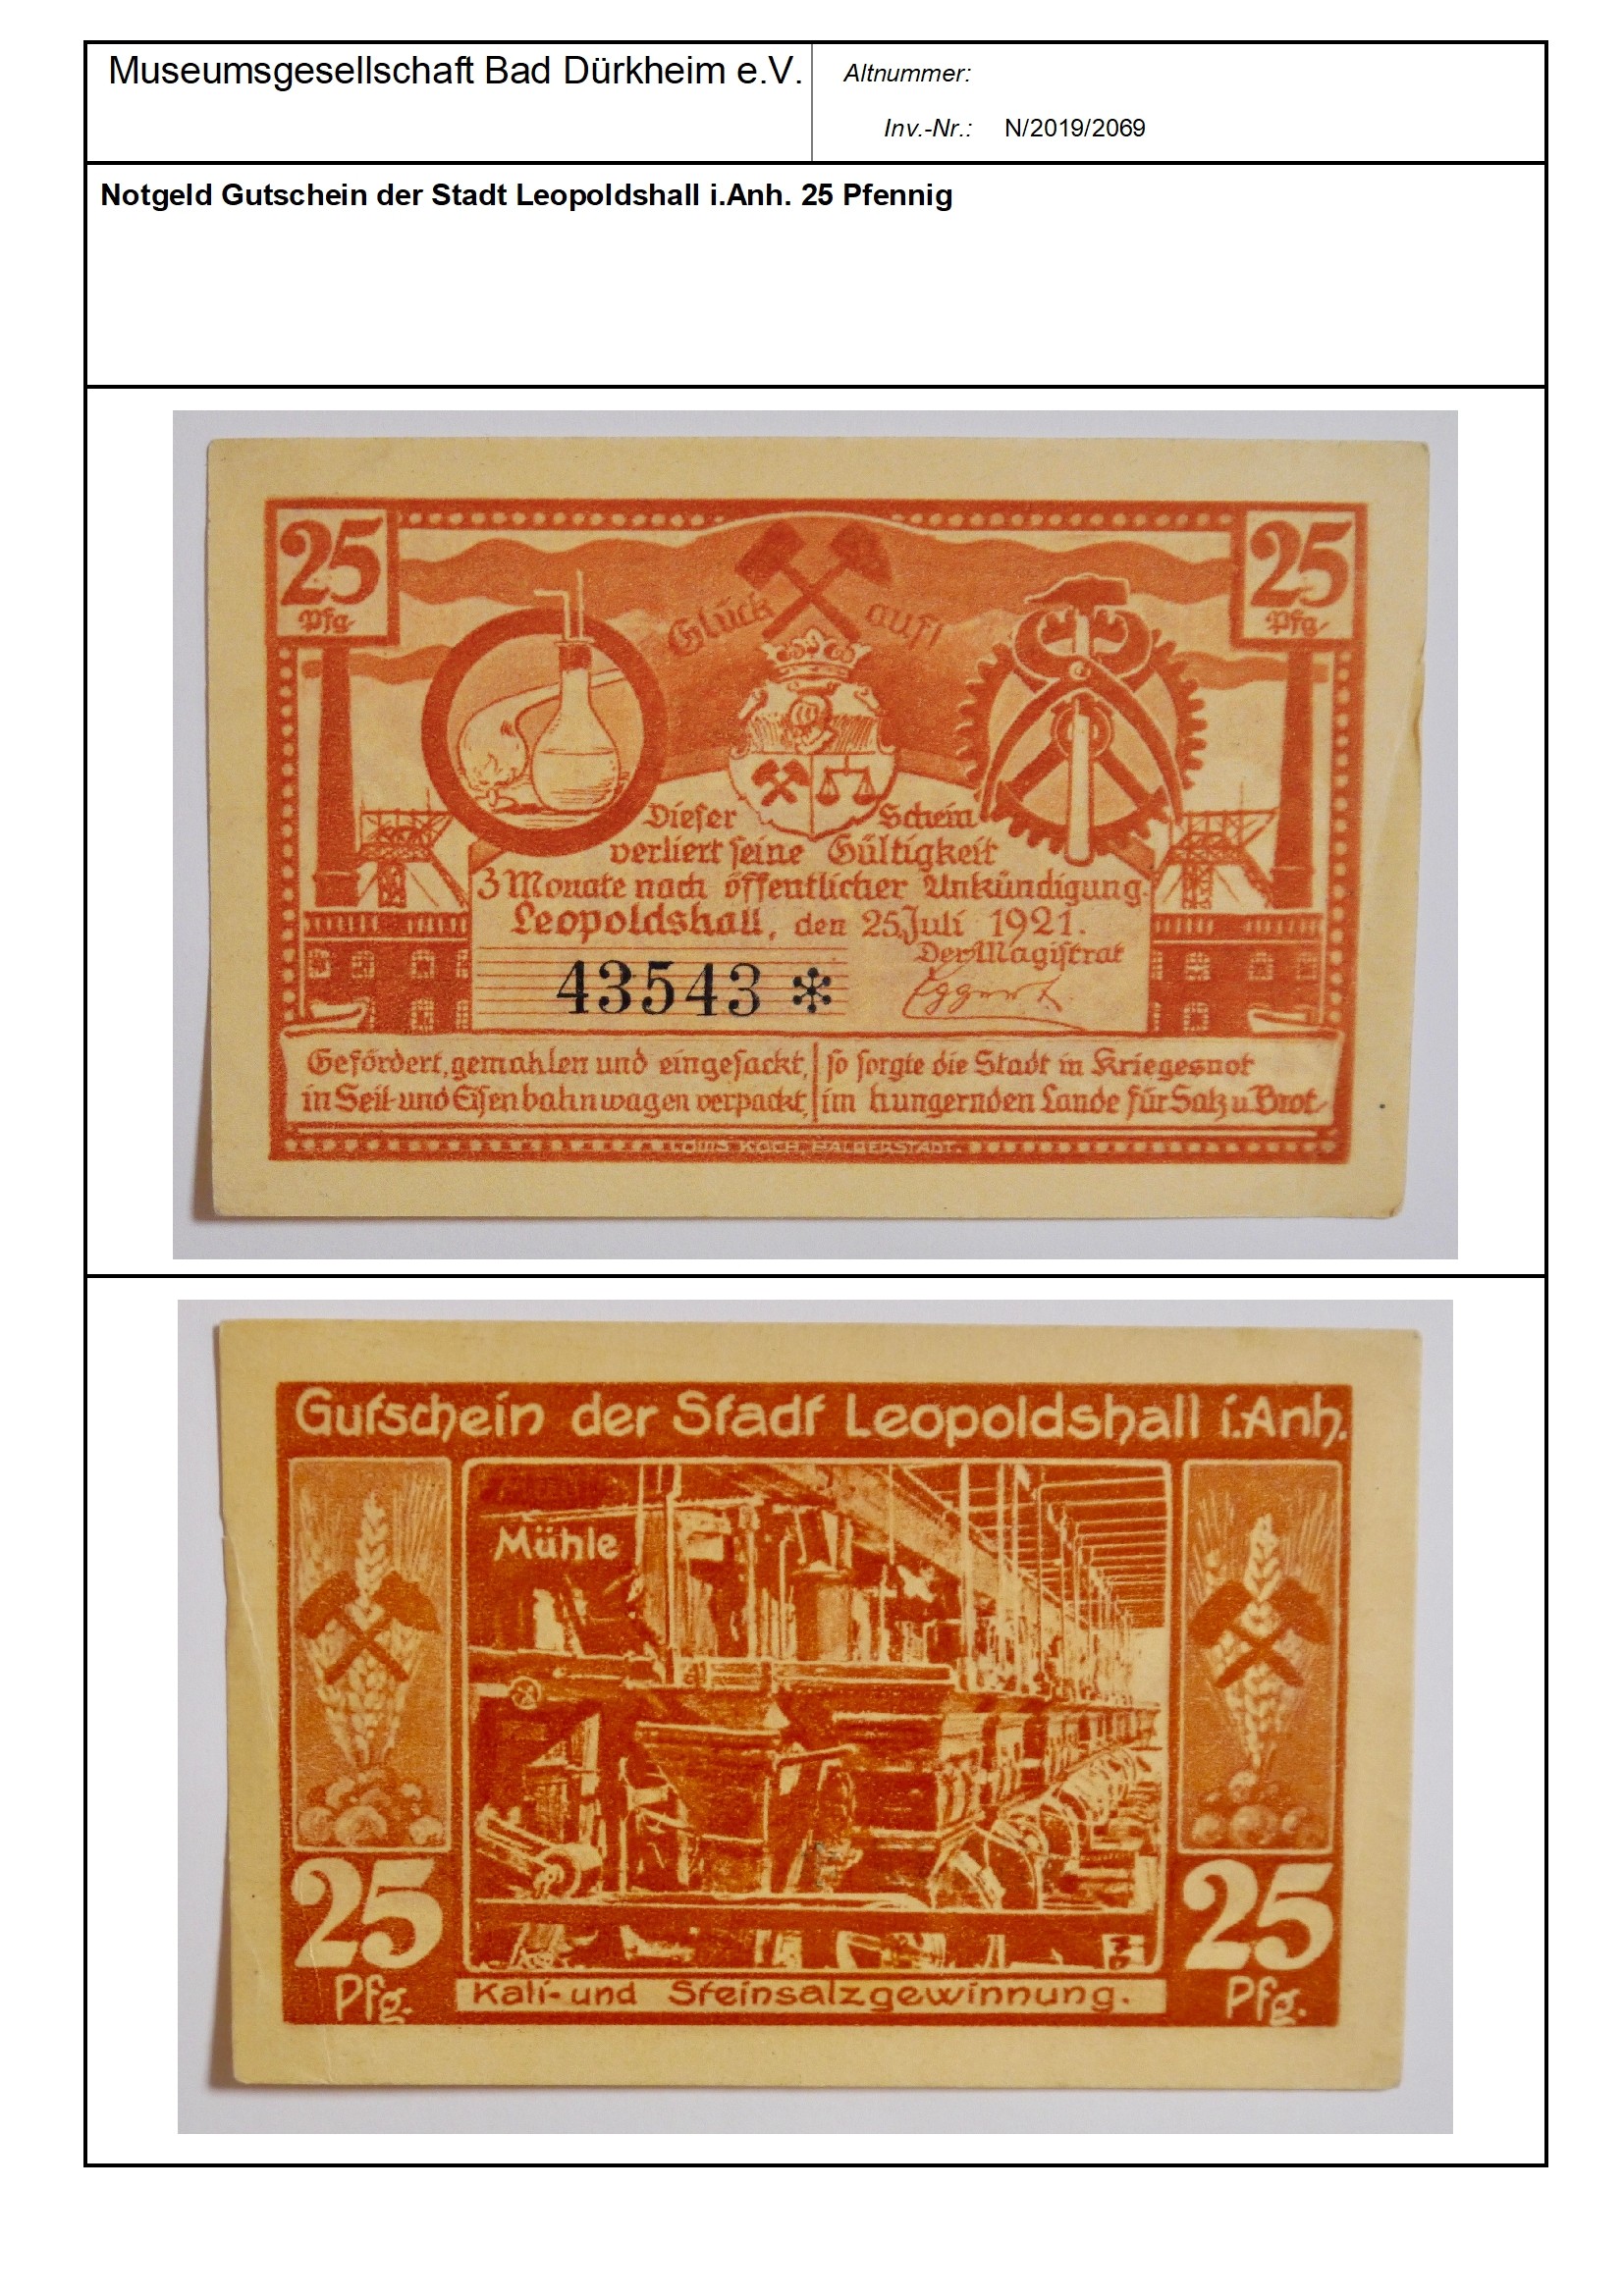 Notgeld Gutschein der Stadt Leopoldshall i.Anh. 25 Pfennig
Serien-Nummer: 43543 * (Museumsgesellschaft Bad Dürkheim e.V. CC BY-NC-SA)